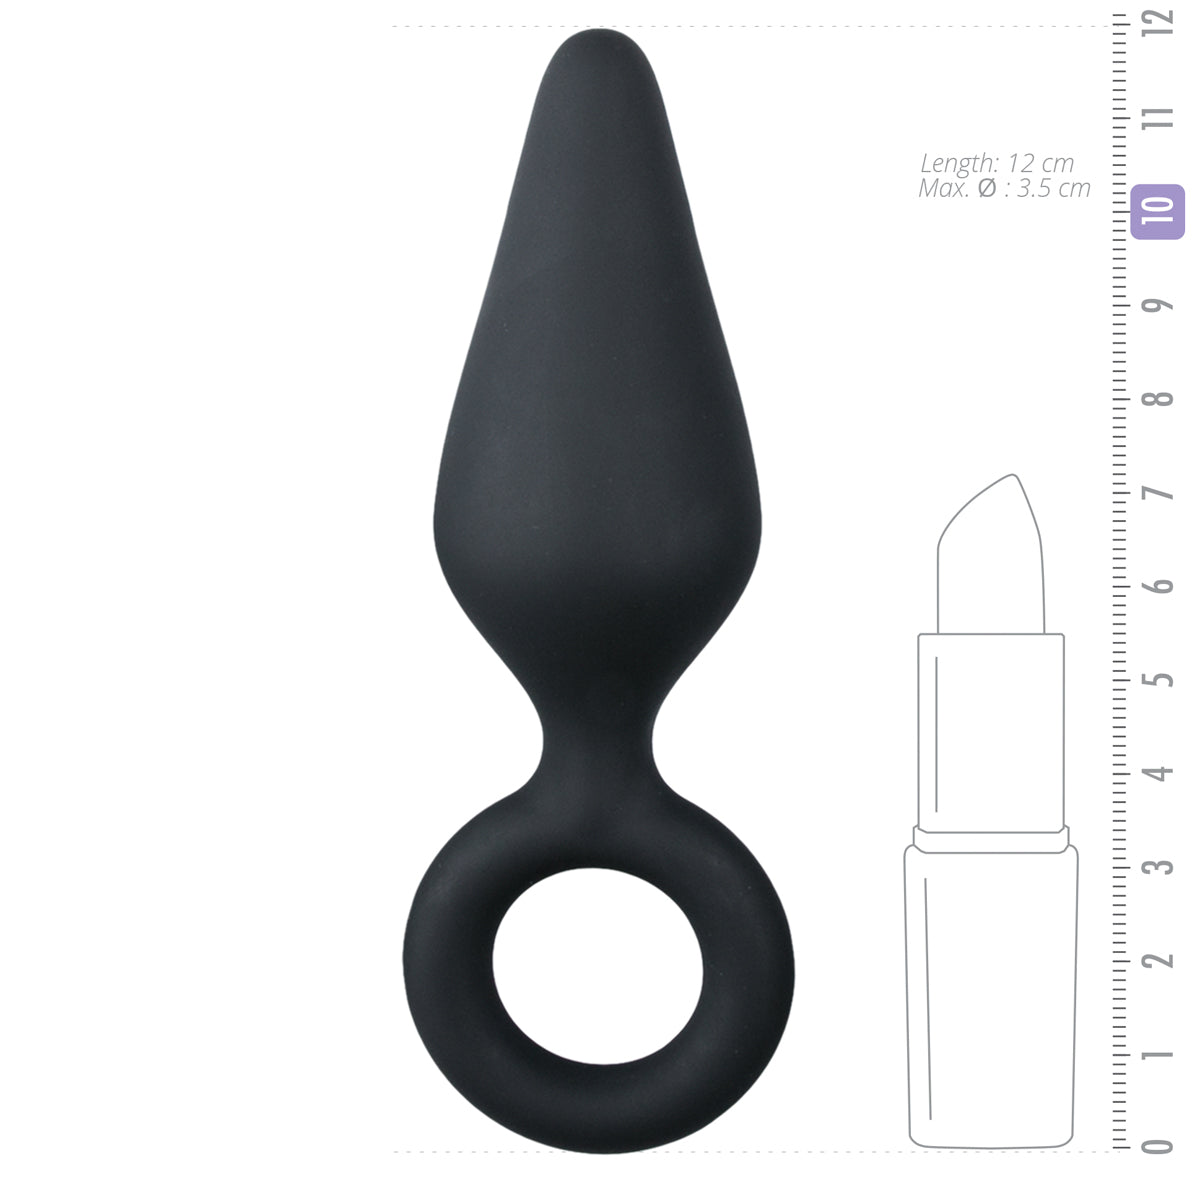 Zwarte butt plug van EasyToys, 12 cm lang en makkelijk uitneembaar door de trekring. Deze butt plug en andere EasyToys producten zijn te koop bij Flavourez.